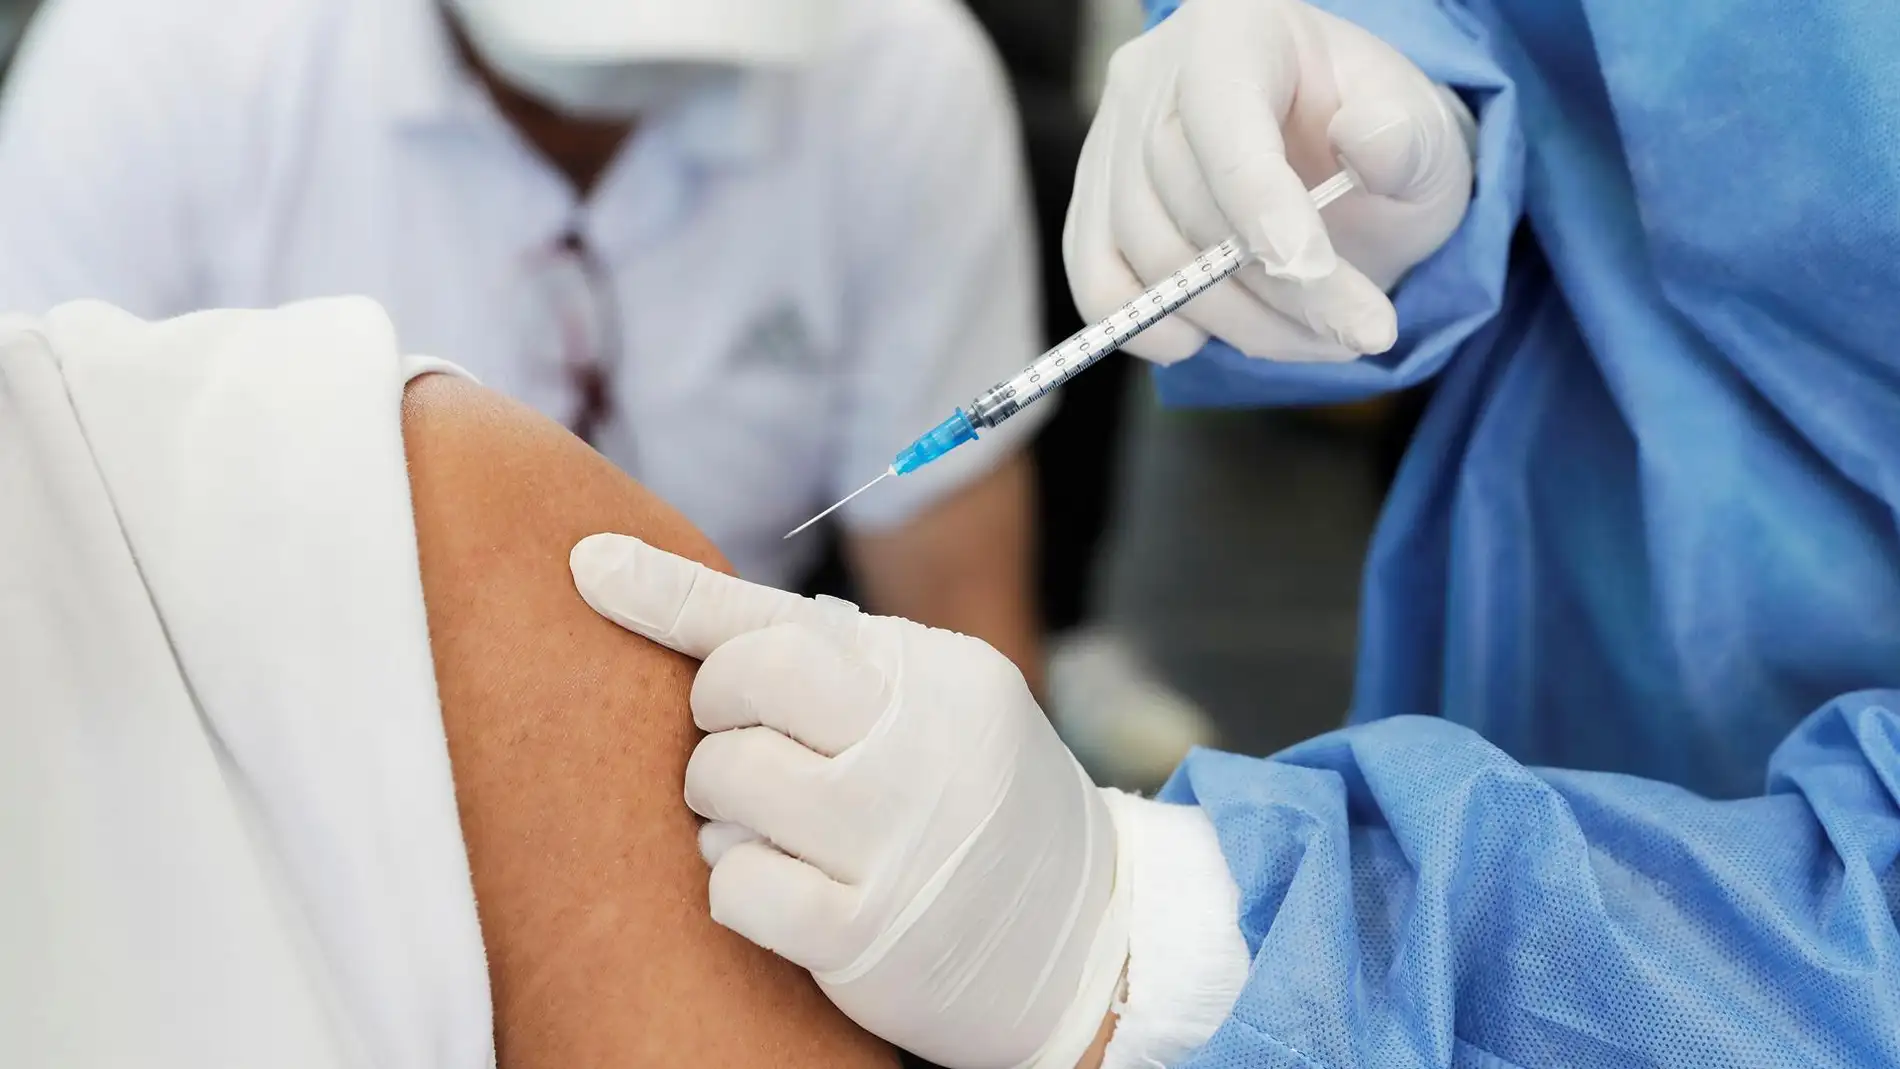 Una enfermera pone una vacuna contra la covid-19, en una imagen de archivo